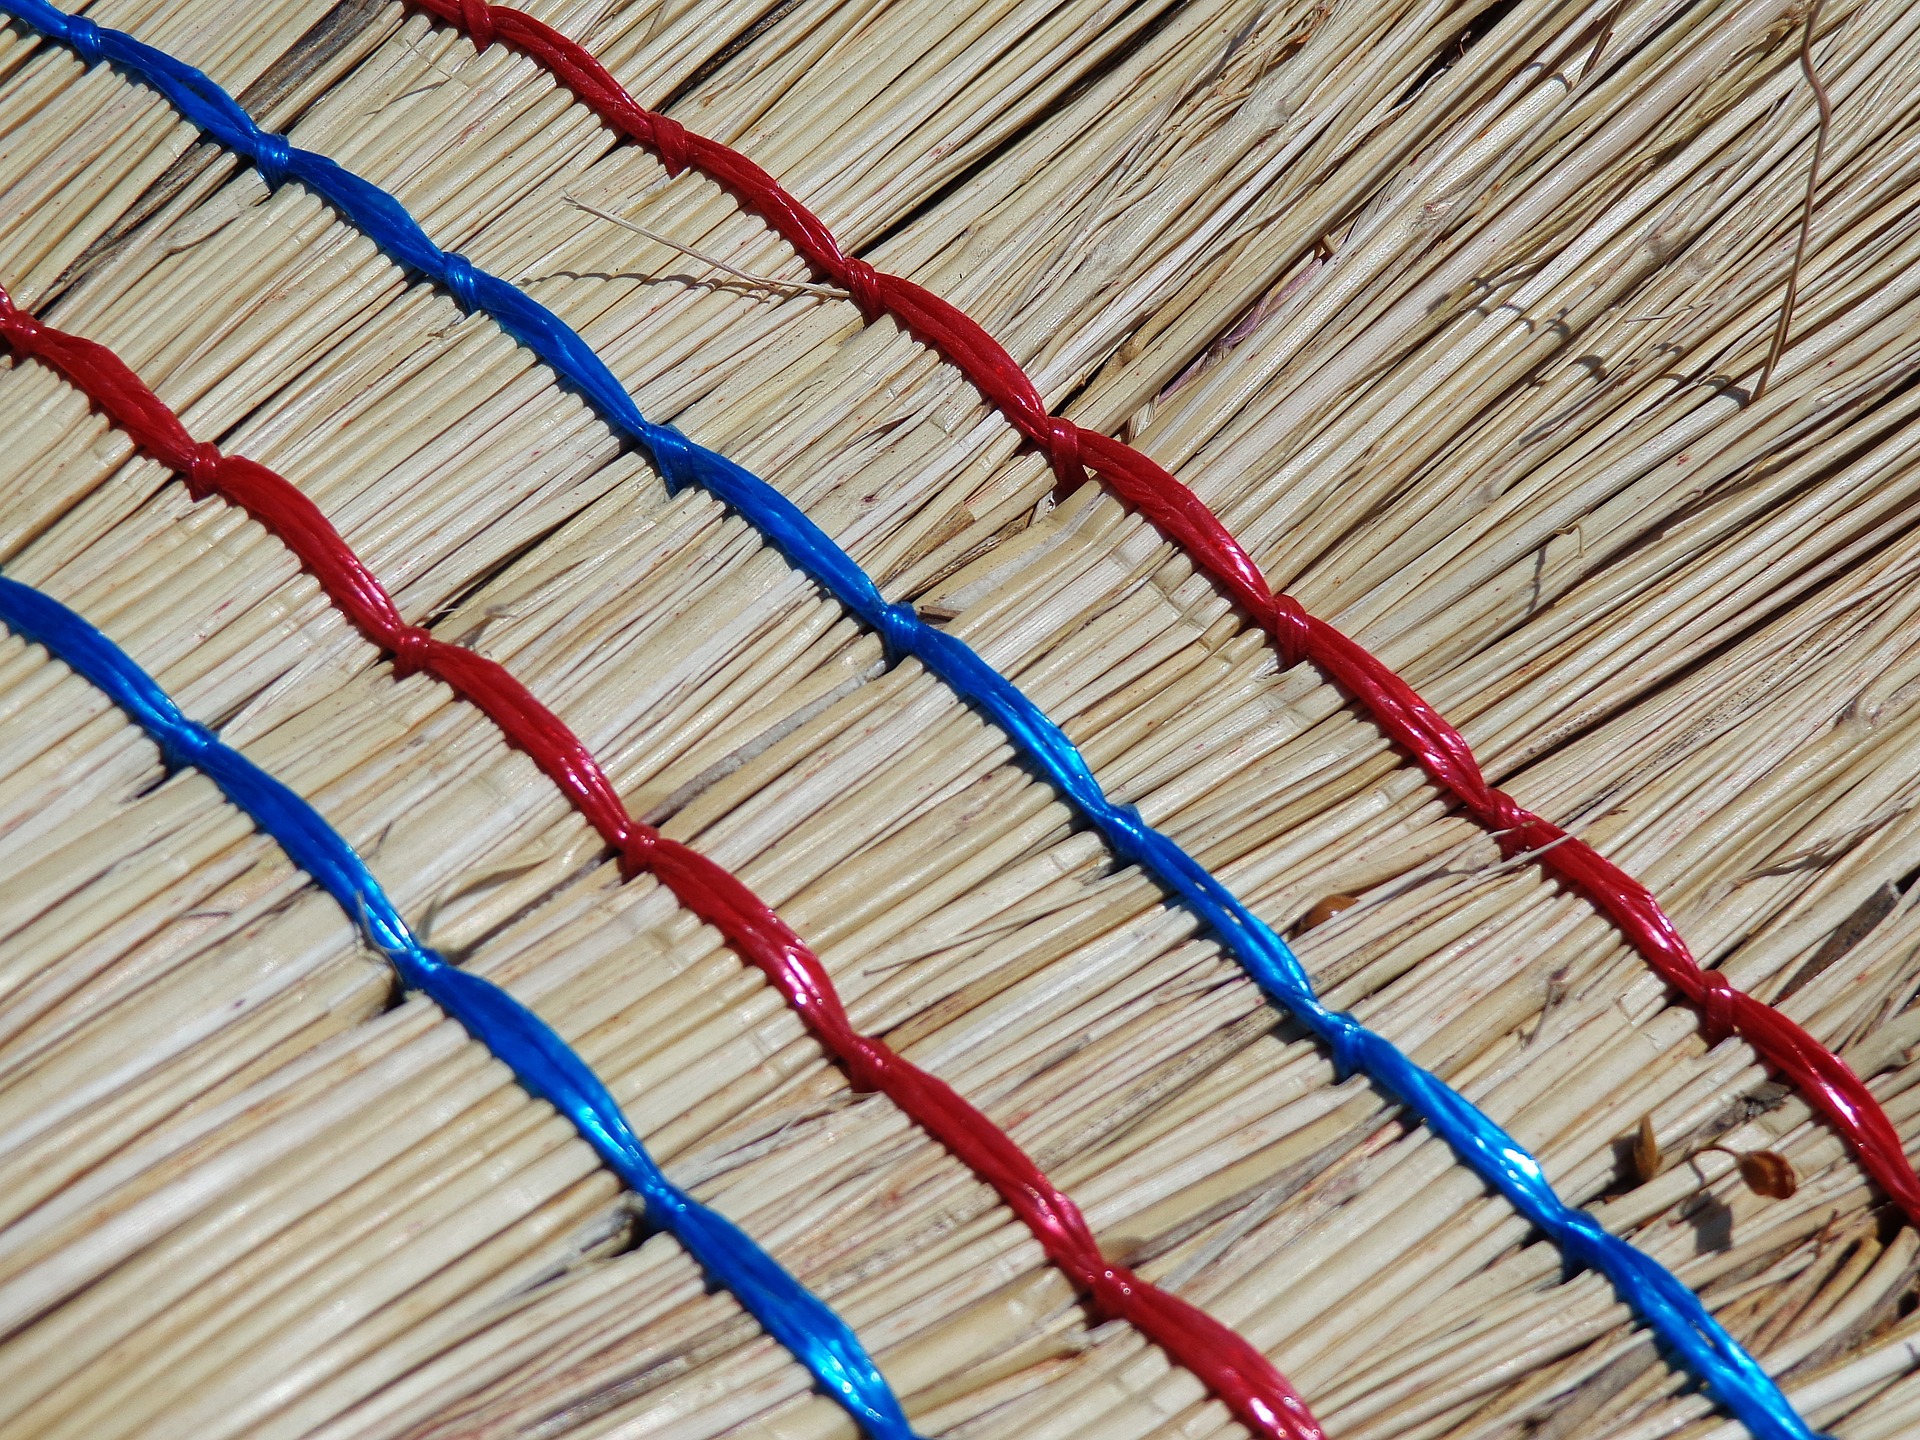 designer kitchen angled brooms